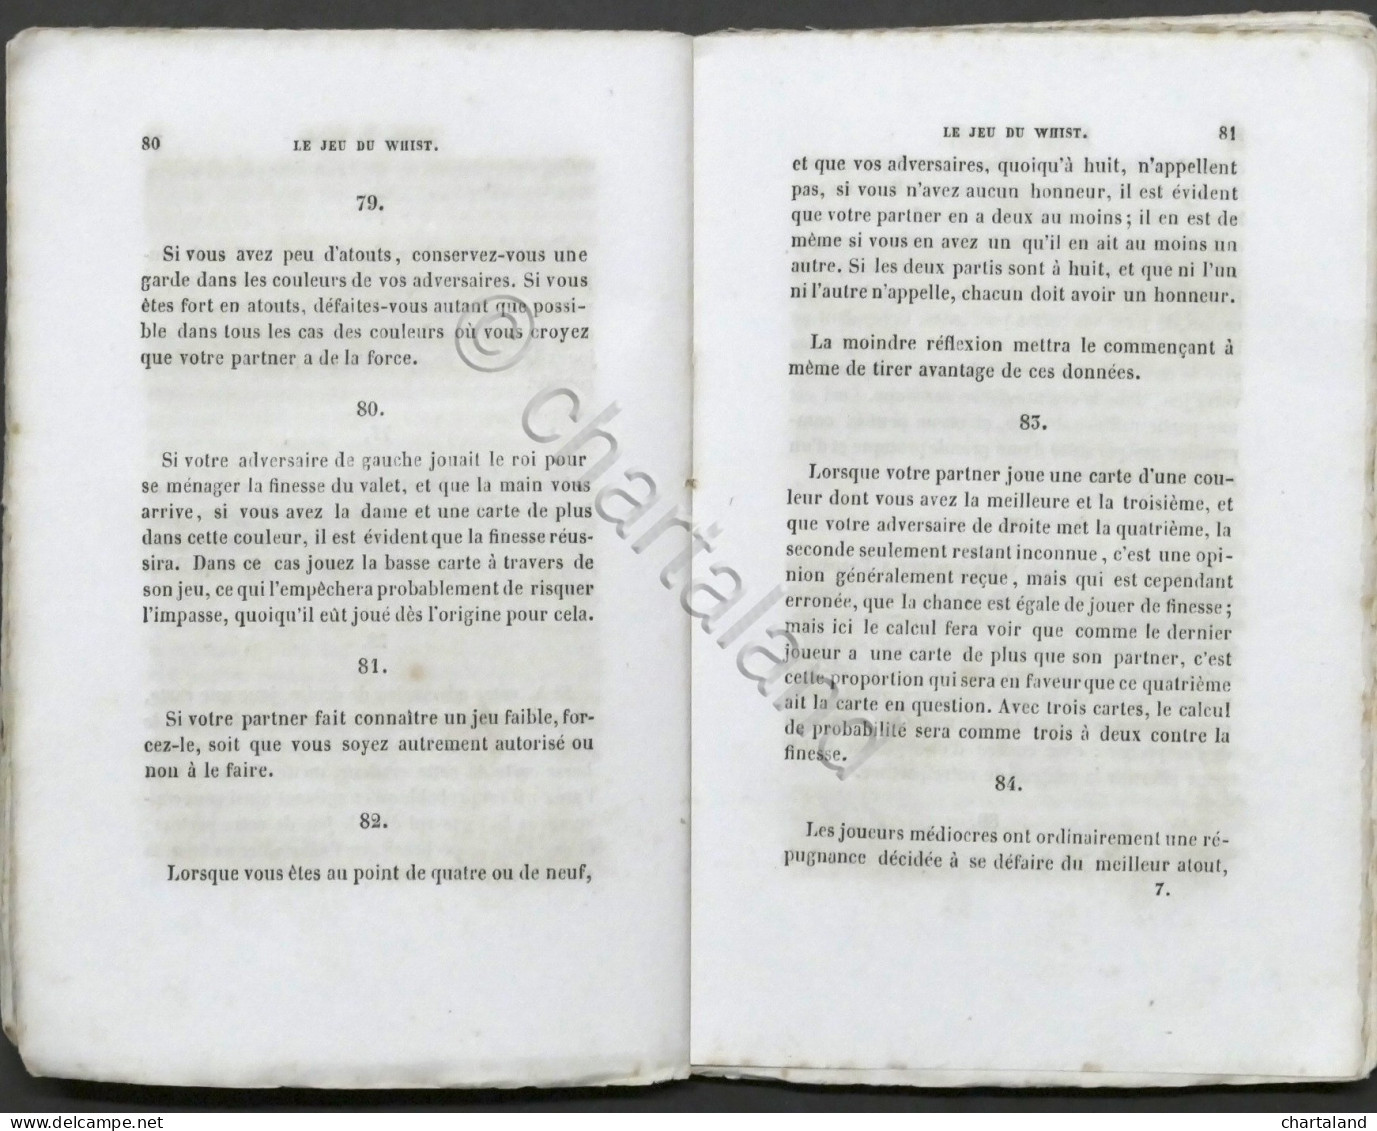 Le Jeu Du Whist - De Loi, Règles, Maximes Et Calcules De Ce Jeu - 1837 - Andere & Zonder Classificatie